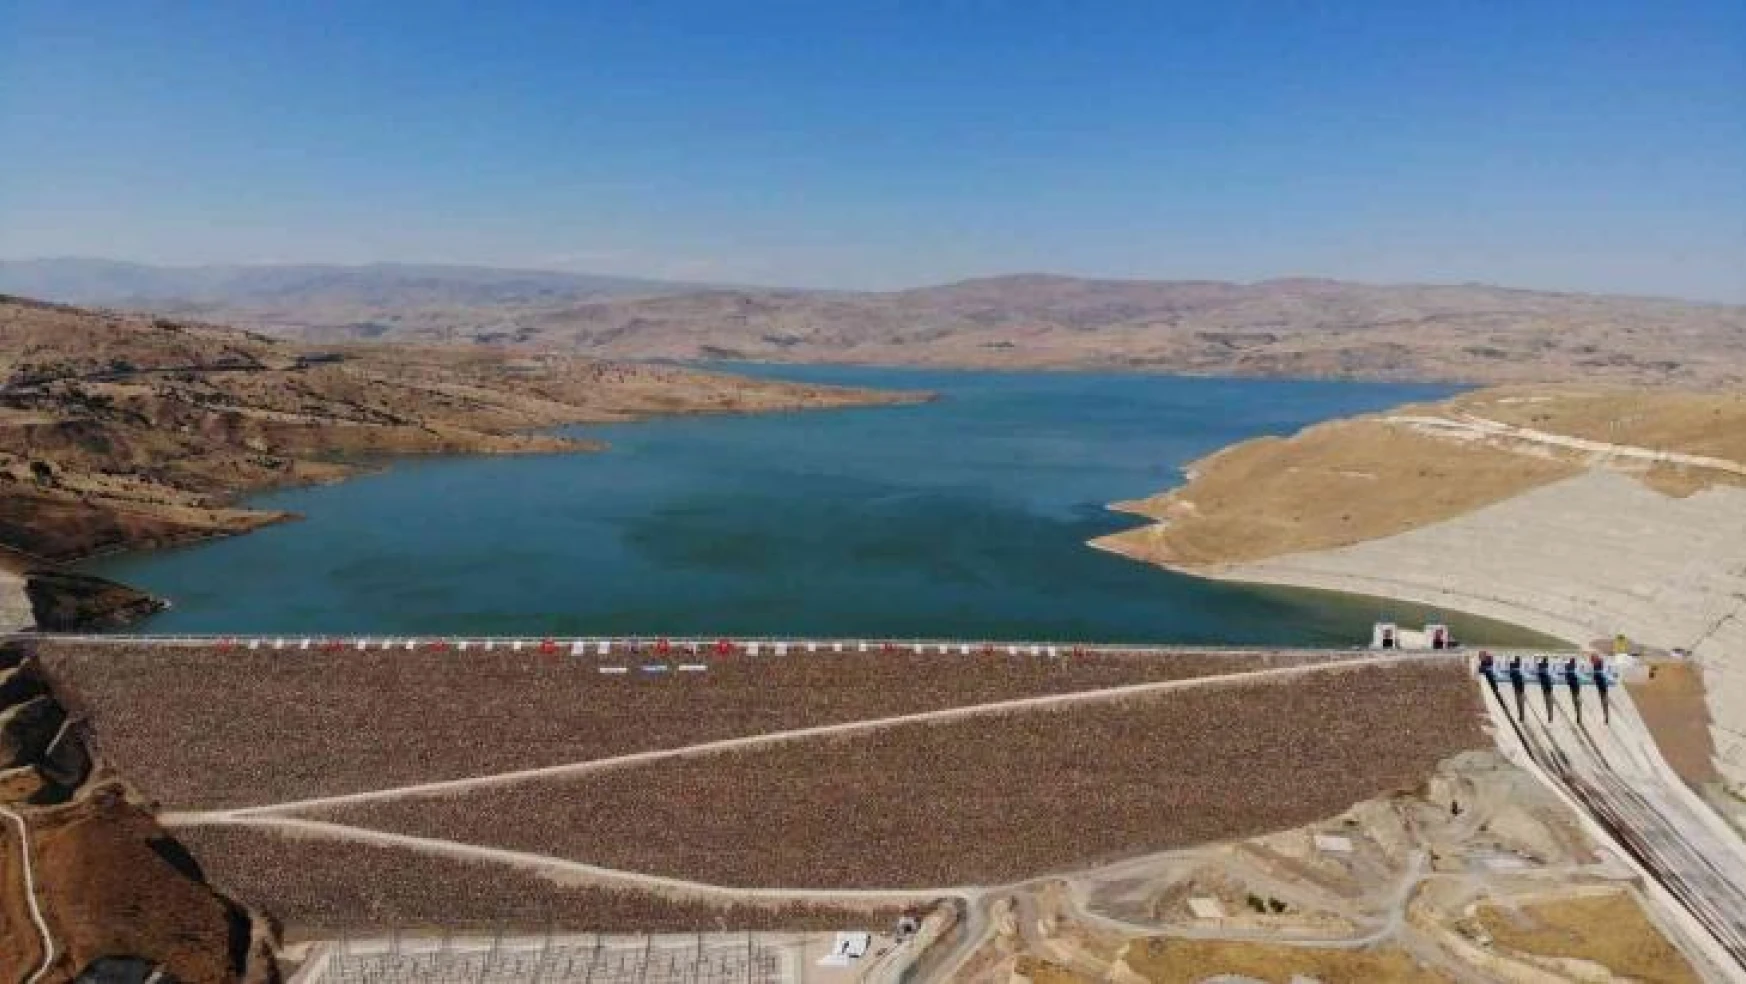 Muş'ta Alparslan-2 Barajı'nın açılışı yapıldı